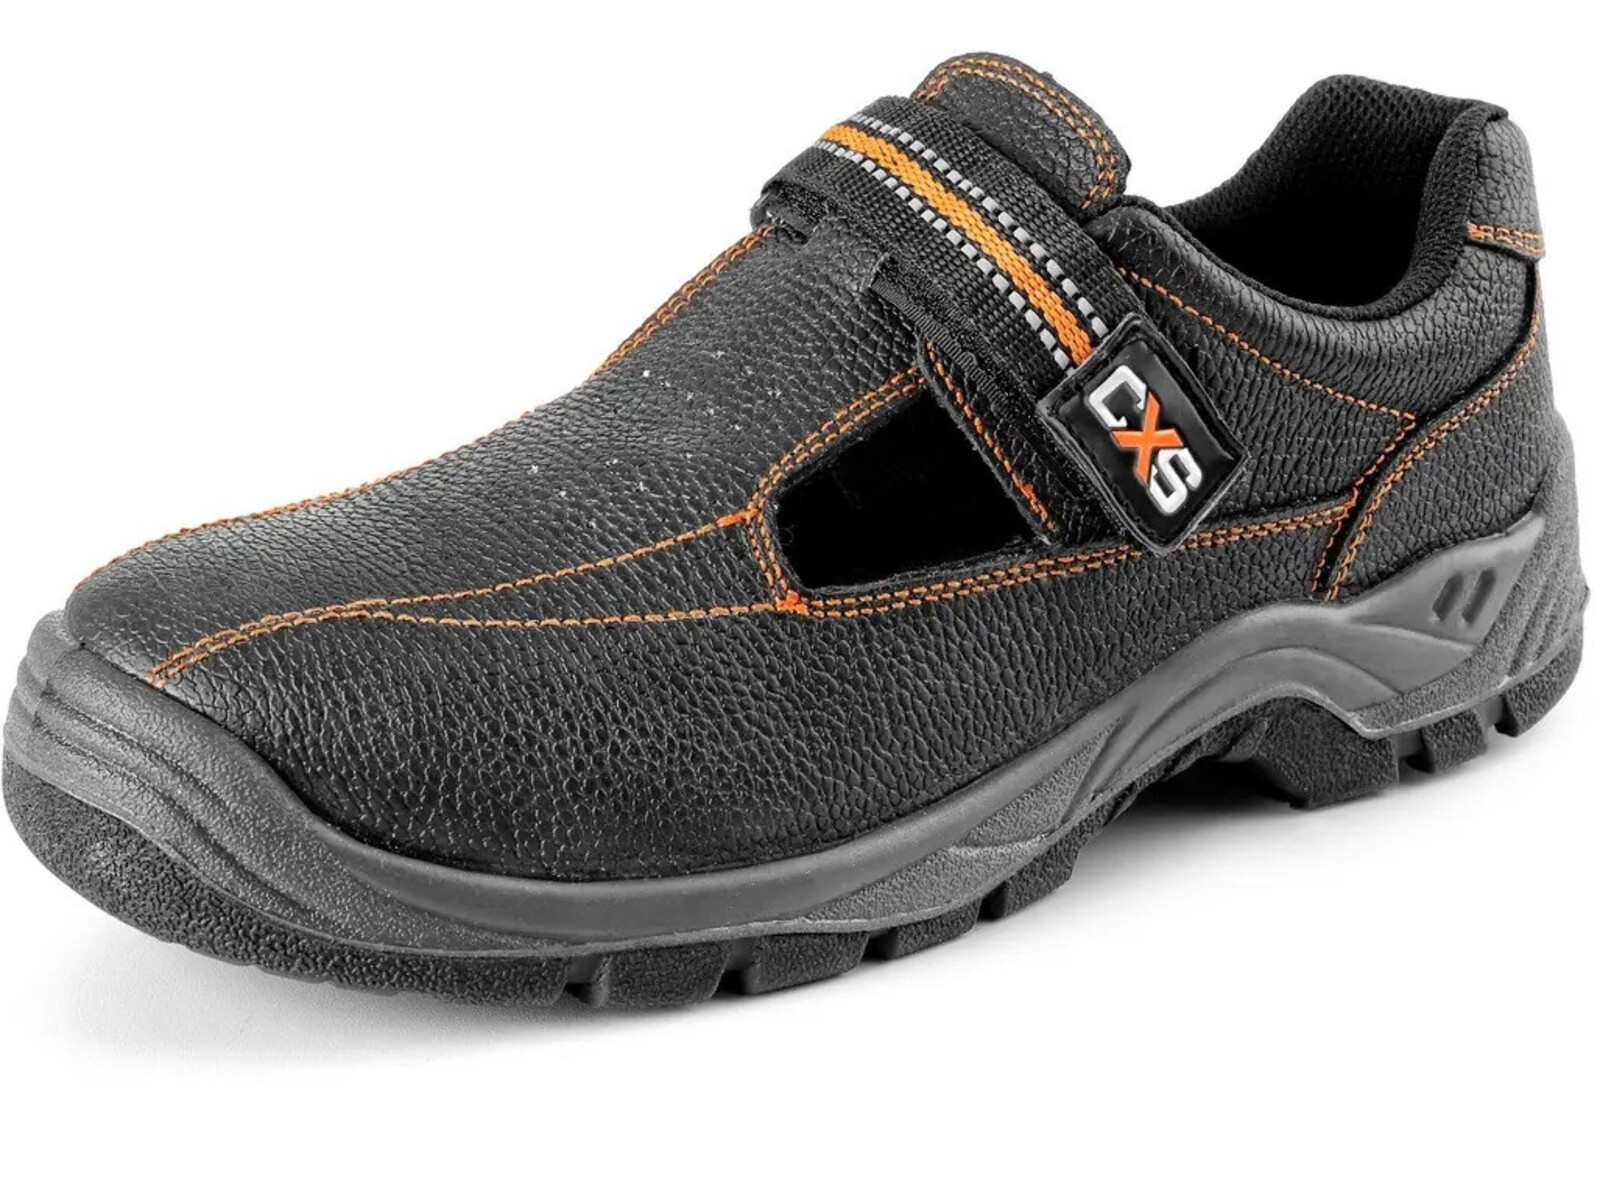 Pracovné sandále CXS Stone Nefrit O1 FO SRC - veľkosť: 49, farba: čierna/oranžová